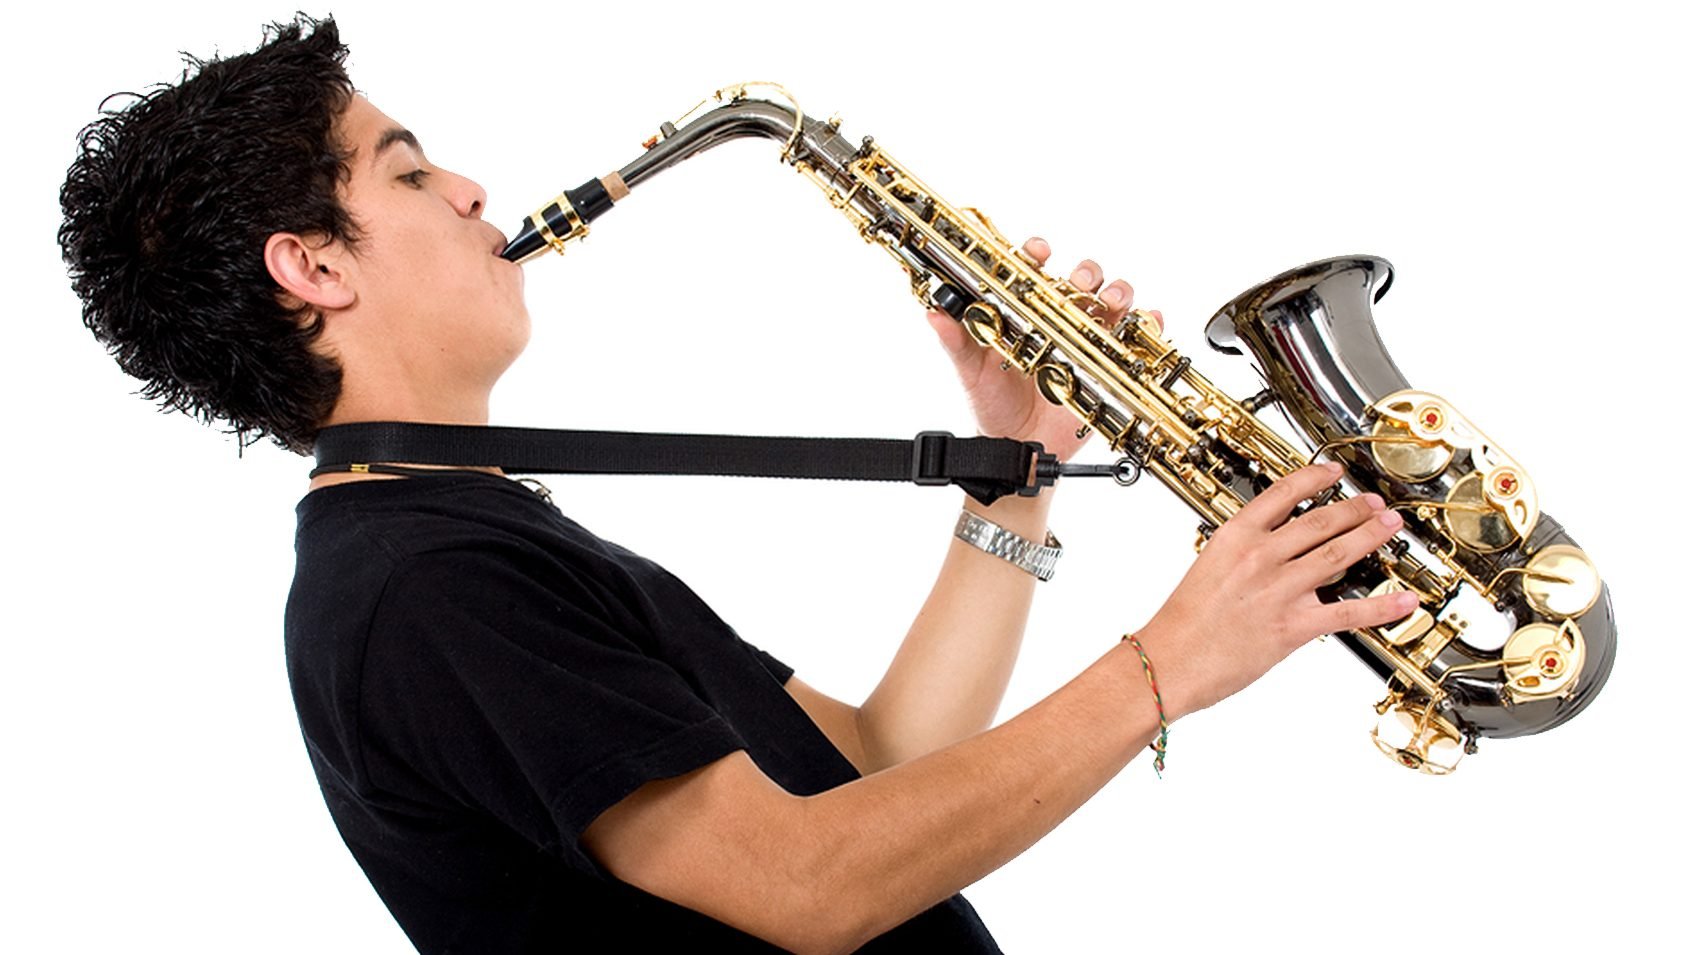 Playing saxophone. Музыканты с инструментами. Человек с музыкальным инструментом. Музыканты играющие на музыкальных инструментах. Человек с саксофоном.